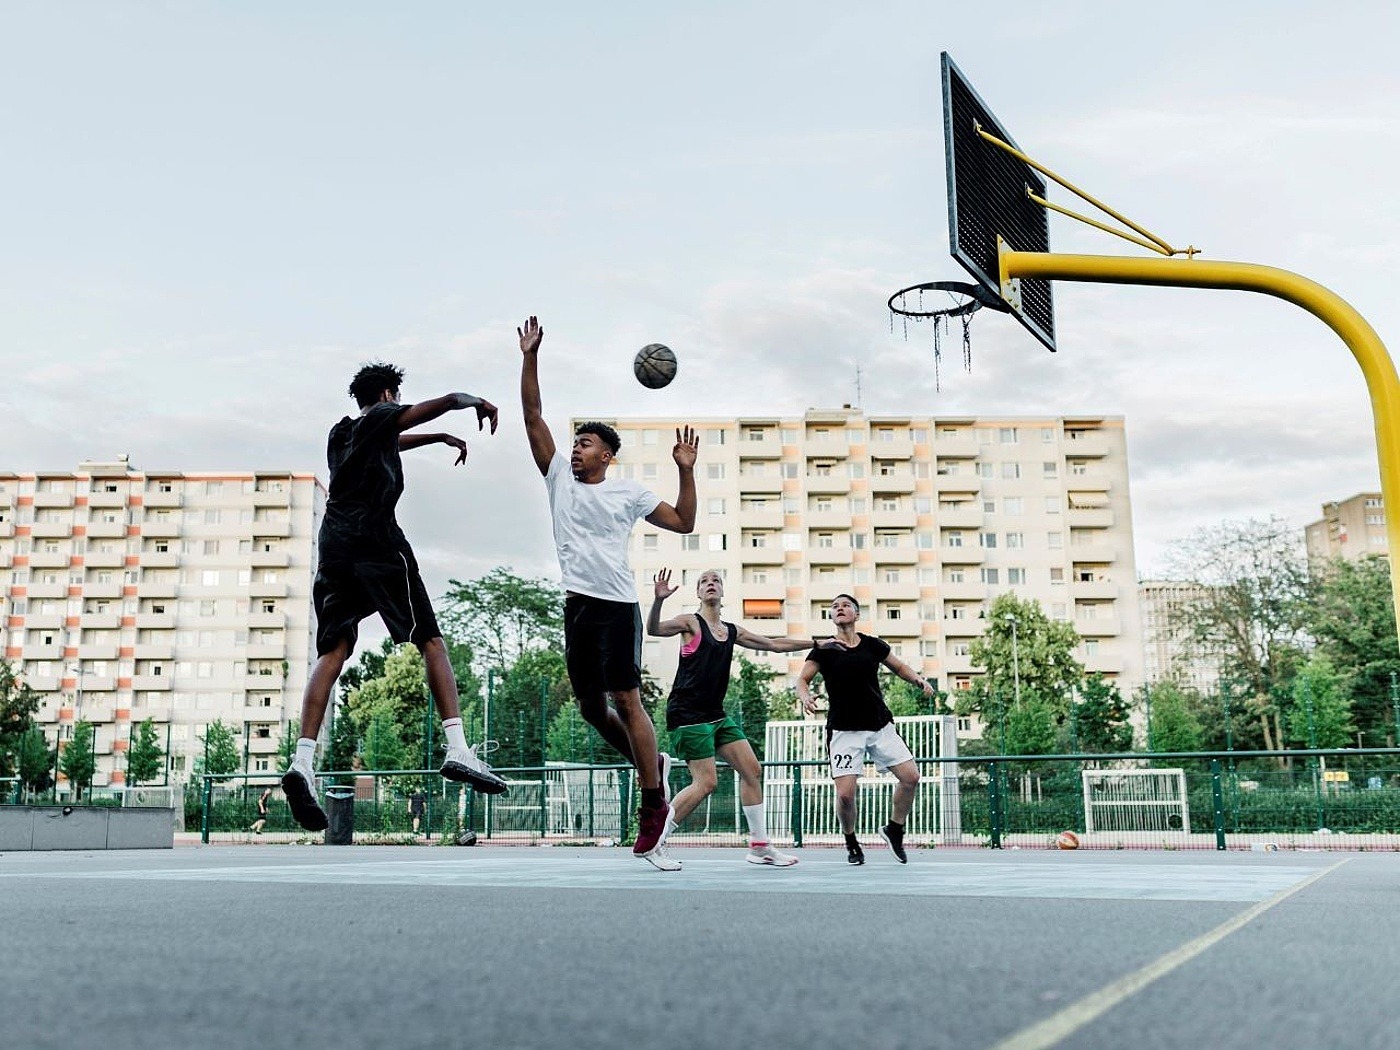 4 Jugendliche spielen Basketball auf einem Asphaltplatz